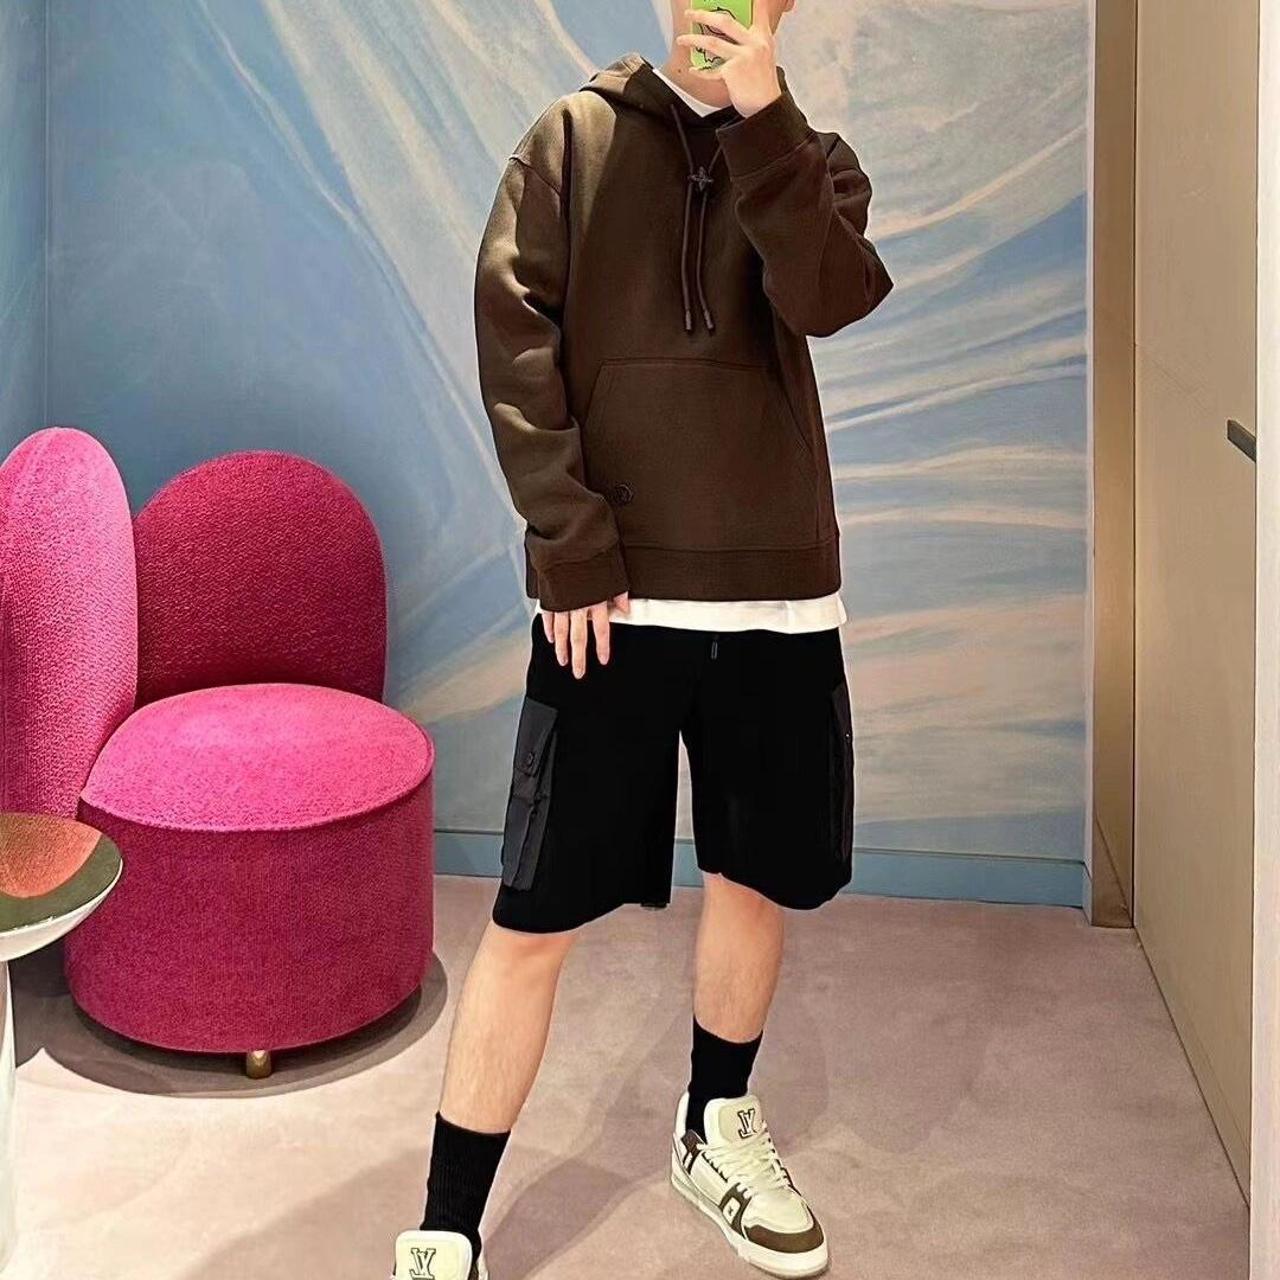 Louis Vuitton hoodie - Depop